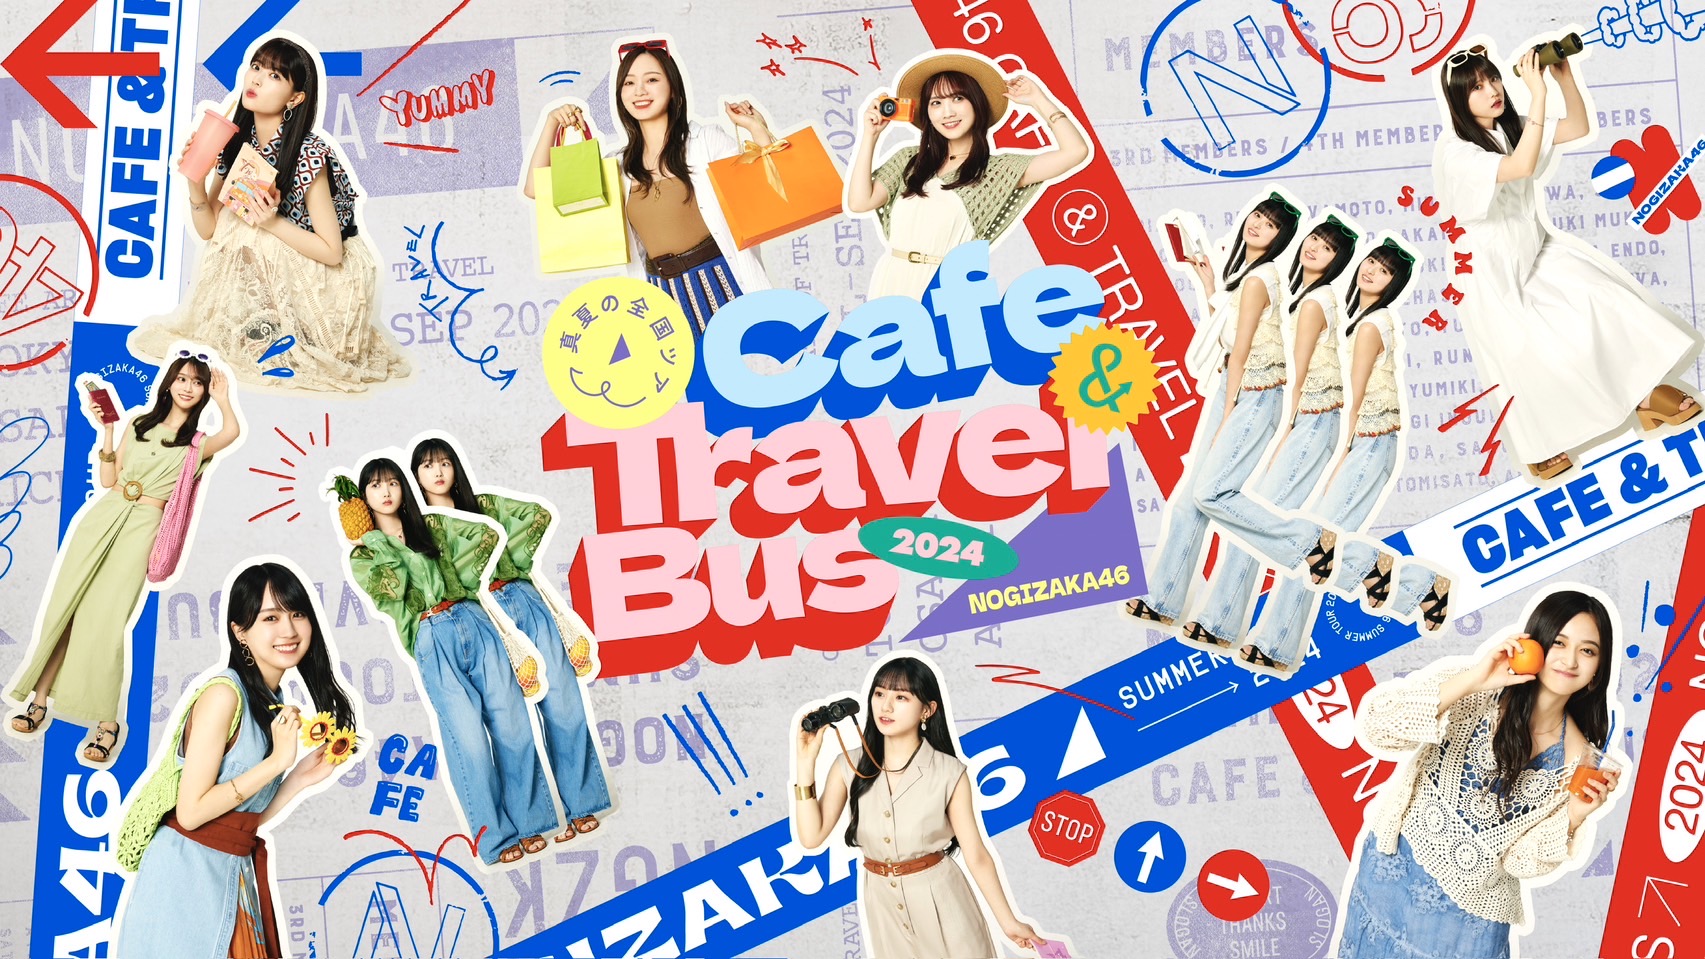 乃木坂46 真夏の全国ツアー2024　CAFE & TRAVEL BUS